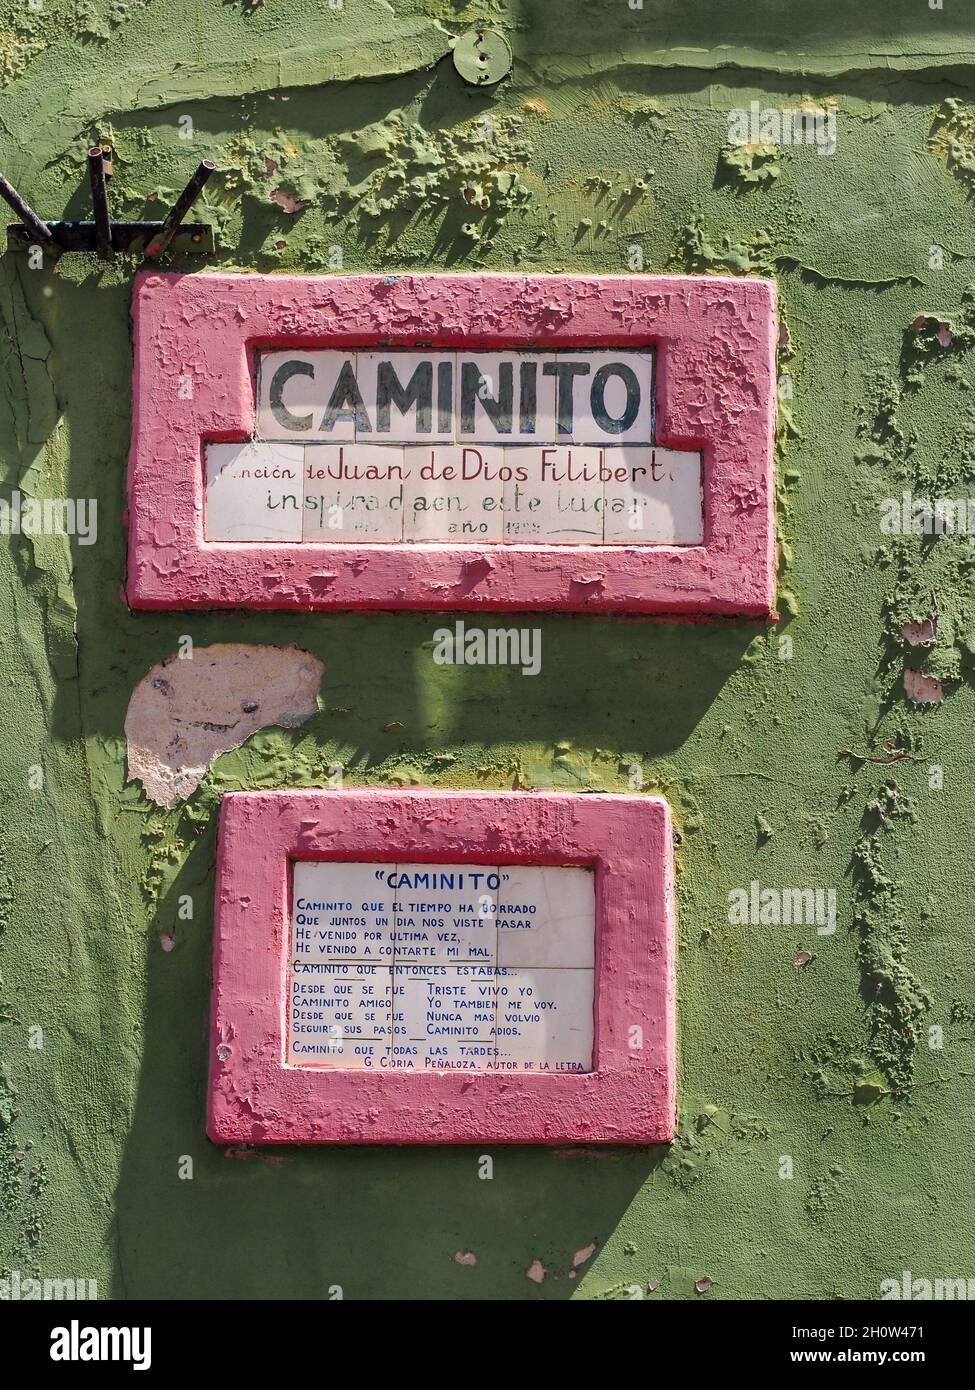 BUENOS AIRES, ARGENTINIEN - 07. Sep 2020: Ein Zeichen von 'Caminito' mit einem entsprechenden Gedicht auf einer grünen Wand Stockfoto